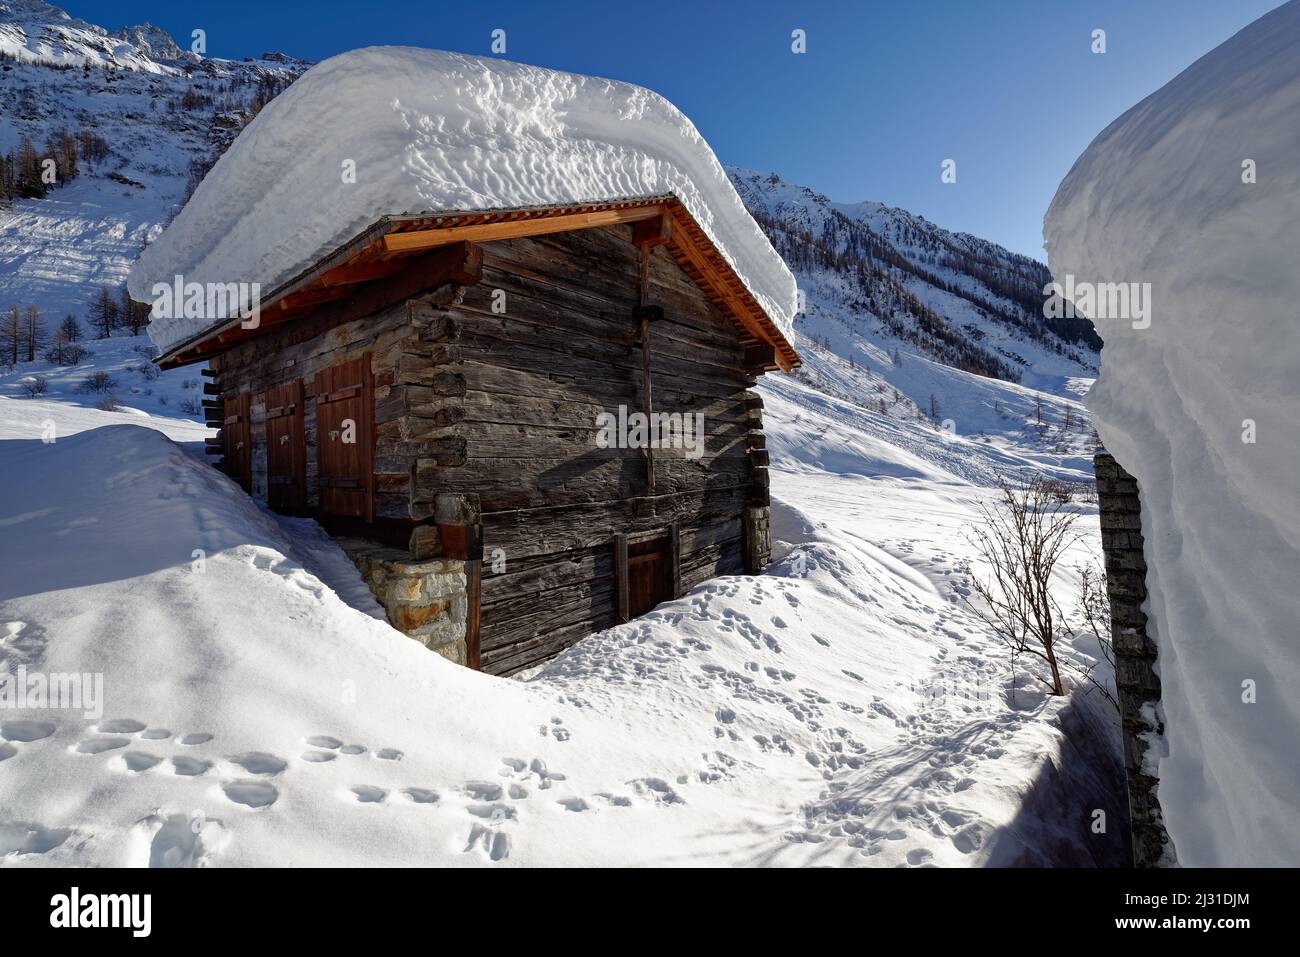 Las cabañas de Vorsaas en el Loetschental, Valais, Suiza. Foto de stock